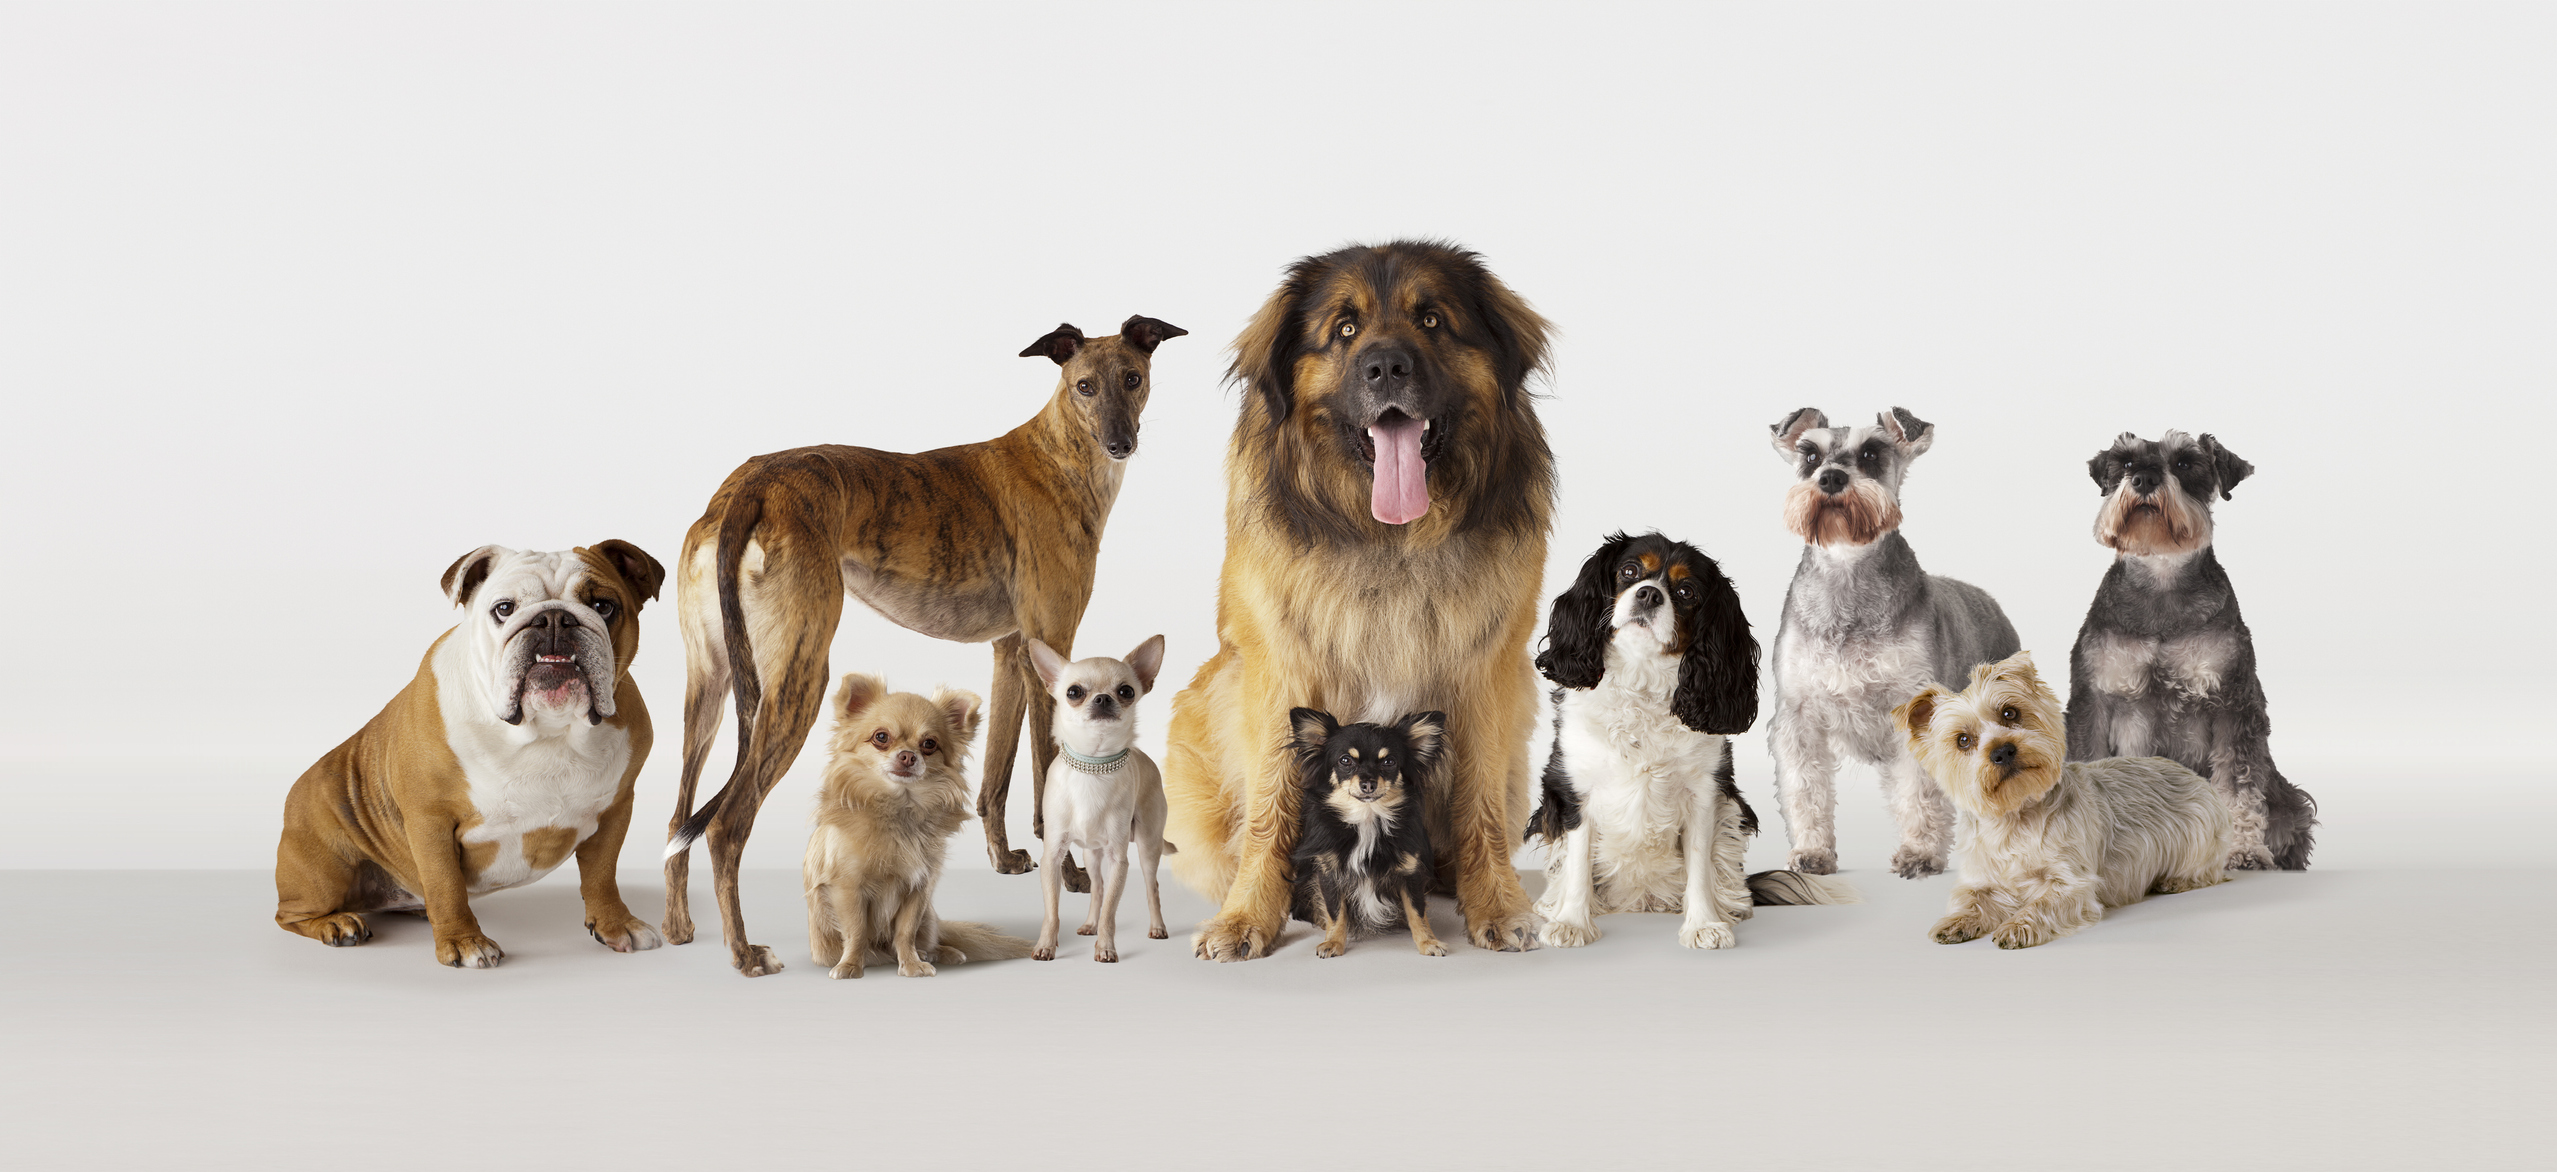 Promedio de vida de los perros varía según su raza y tamaño; importante tener en cuenta cuidados en la vejez y dar calidad de vida.